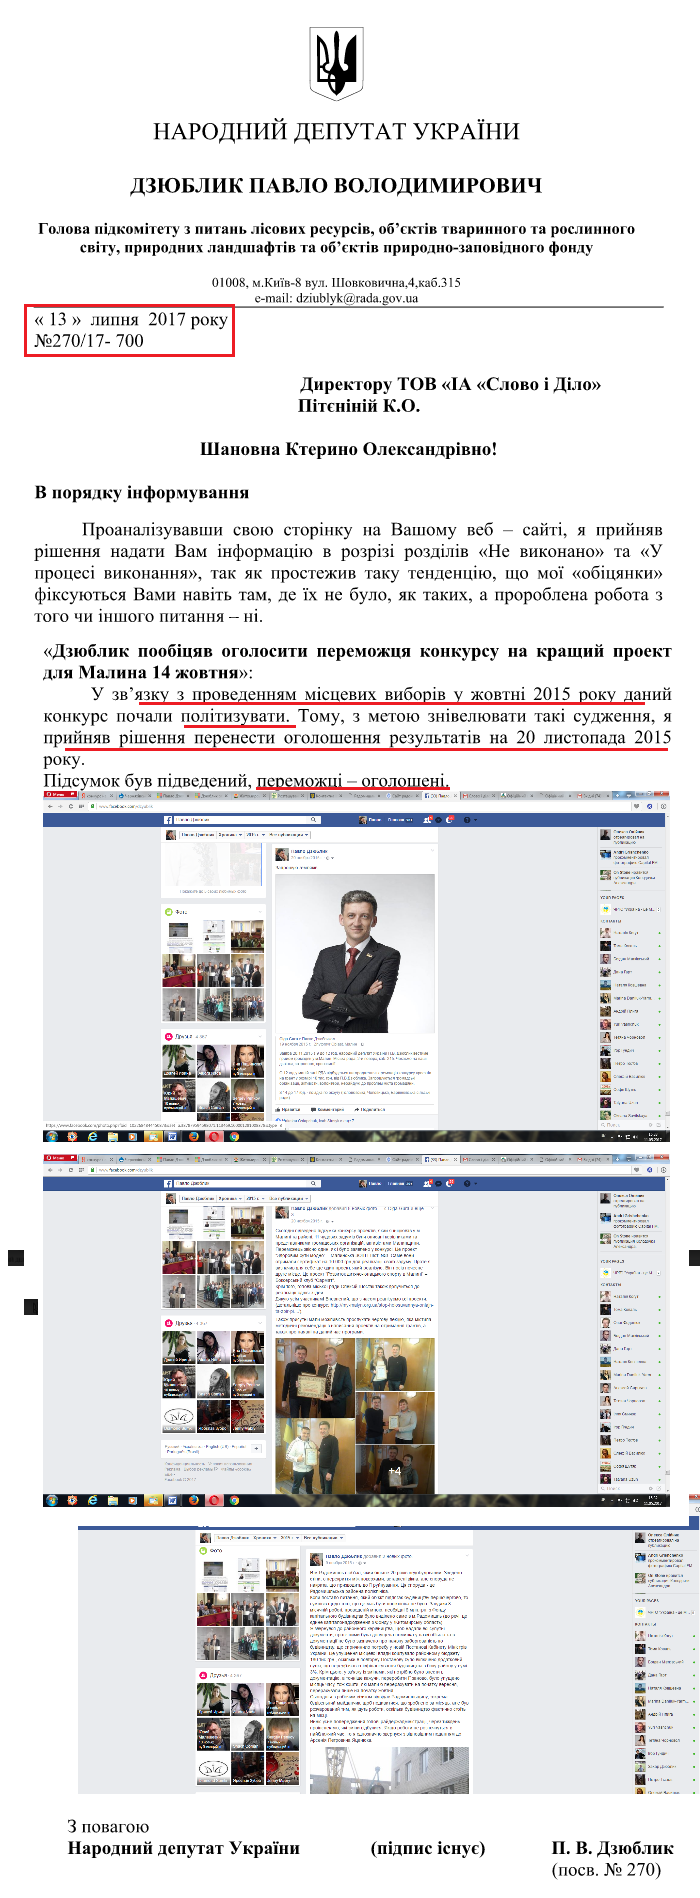 Лист народного депутата Павла Дзюблика від 13 липня 2017 року